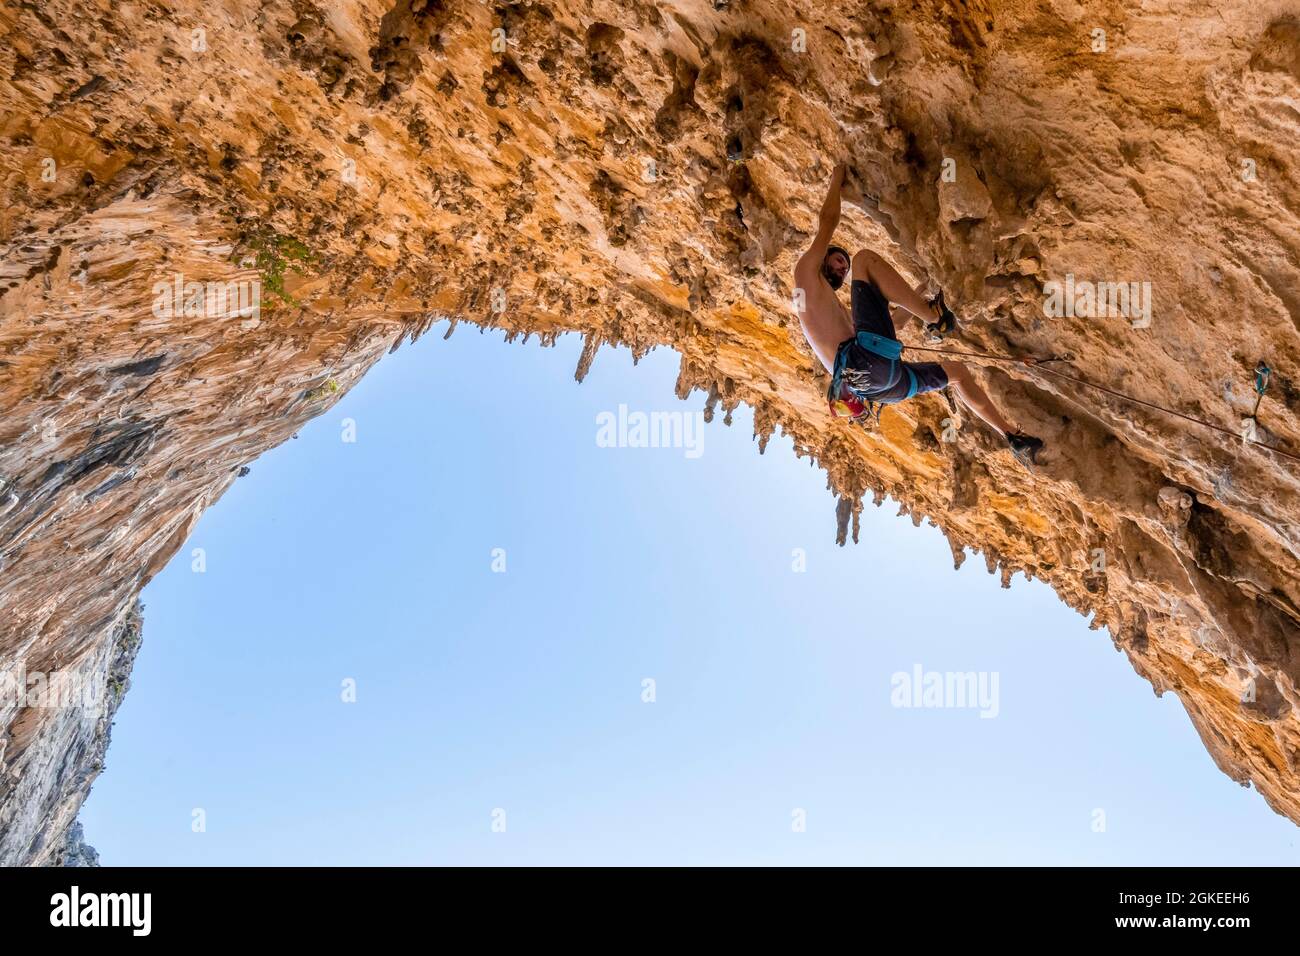 Gran Grotta, Armeos sector, escalada en plomo, escalada deportiva, Kalymnos, Dodecaneso, Grecia Foto de stock